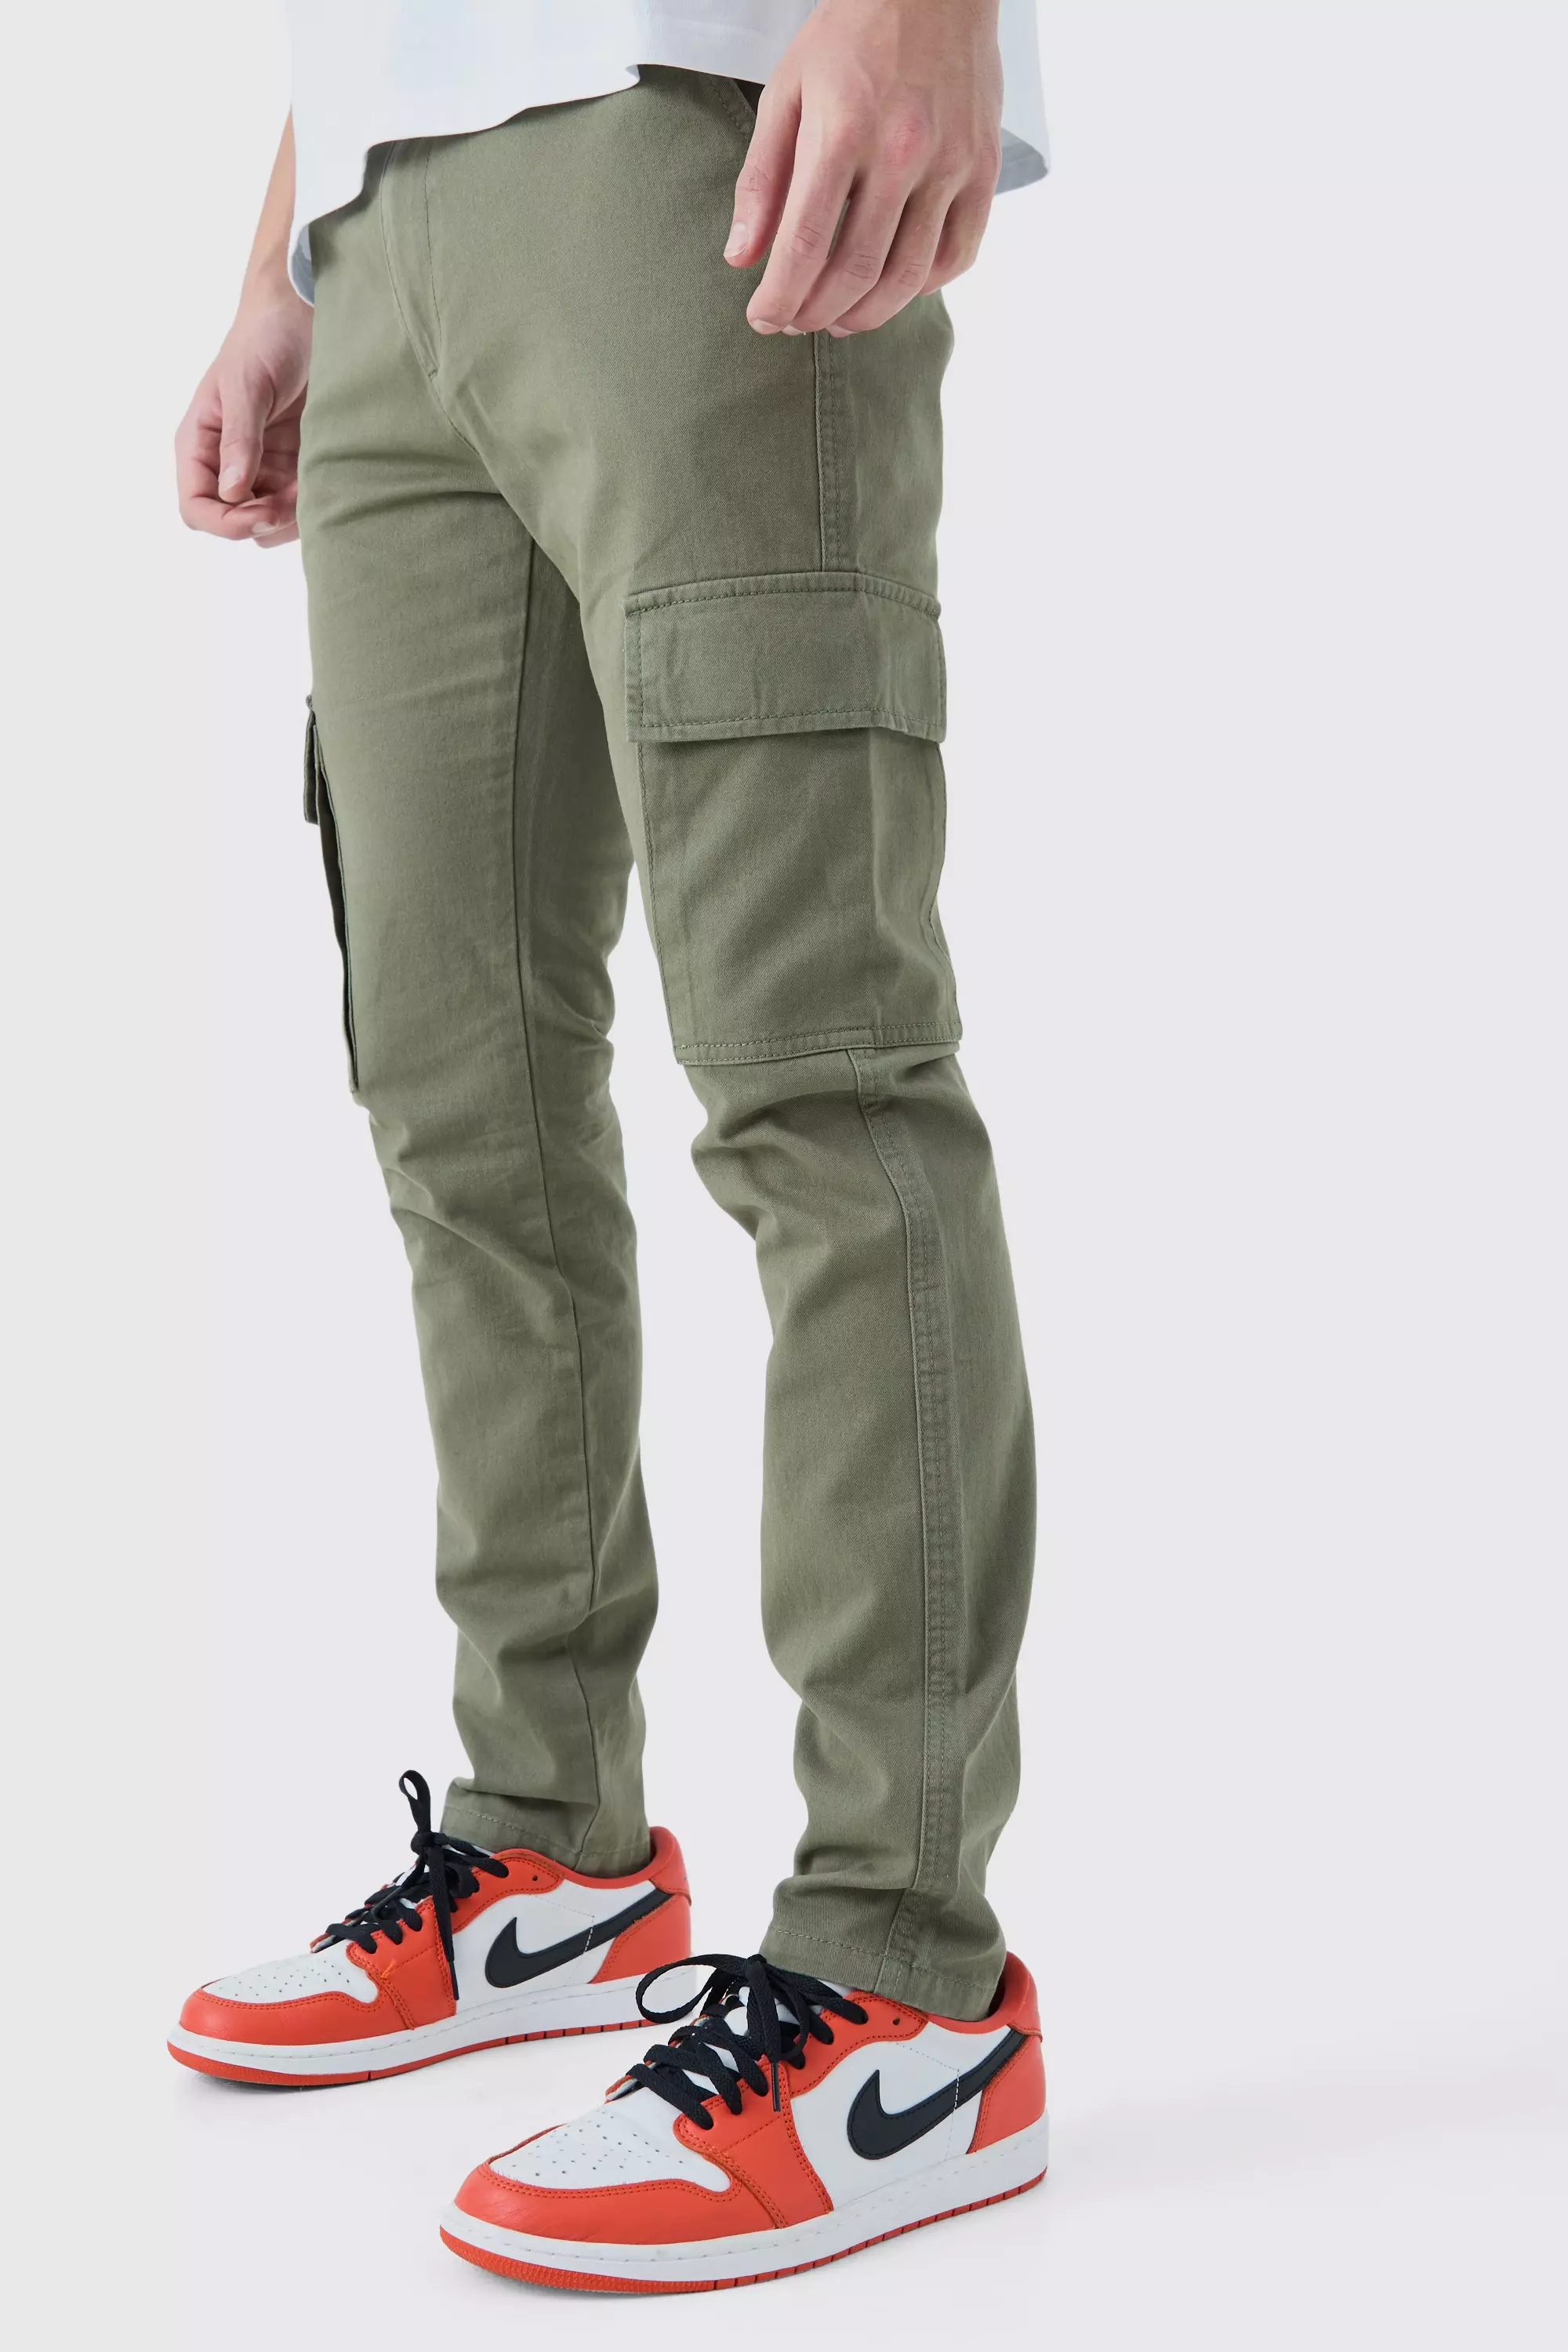 Pantalon cargo extérieur kaki, homme, Outfit, Verdemax